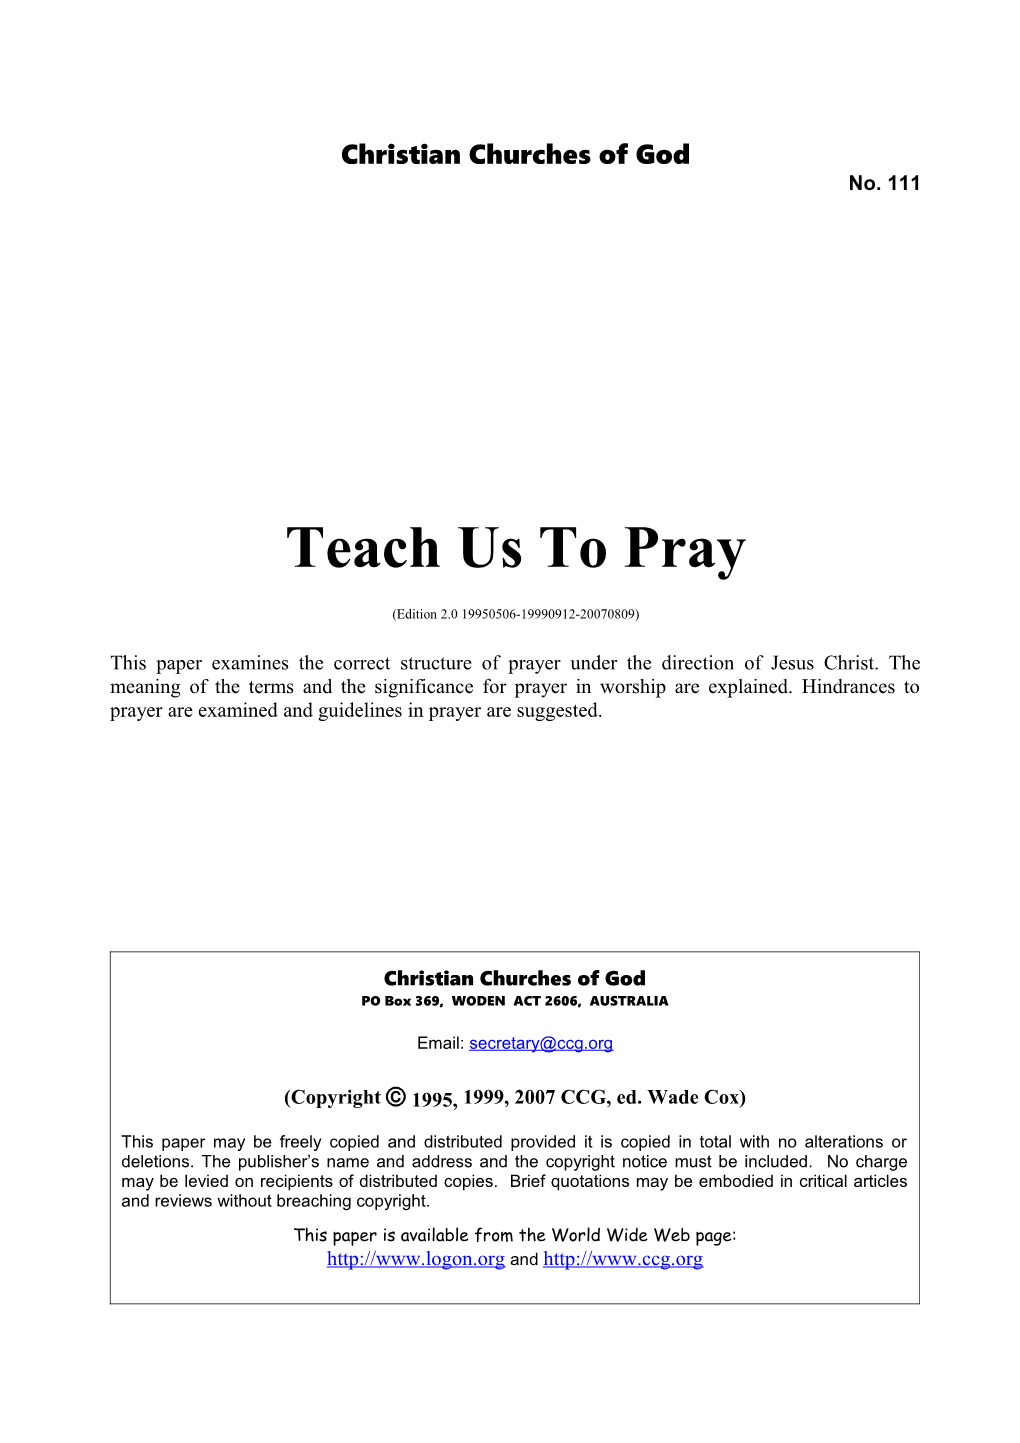 Teach Us to Pray (No. 111)